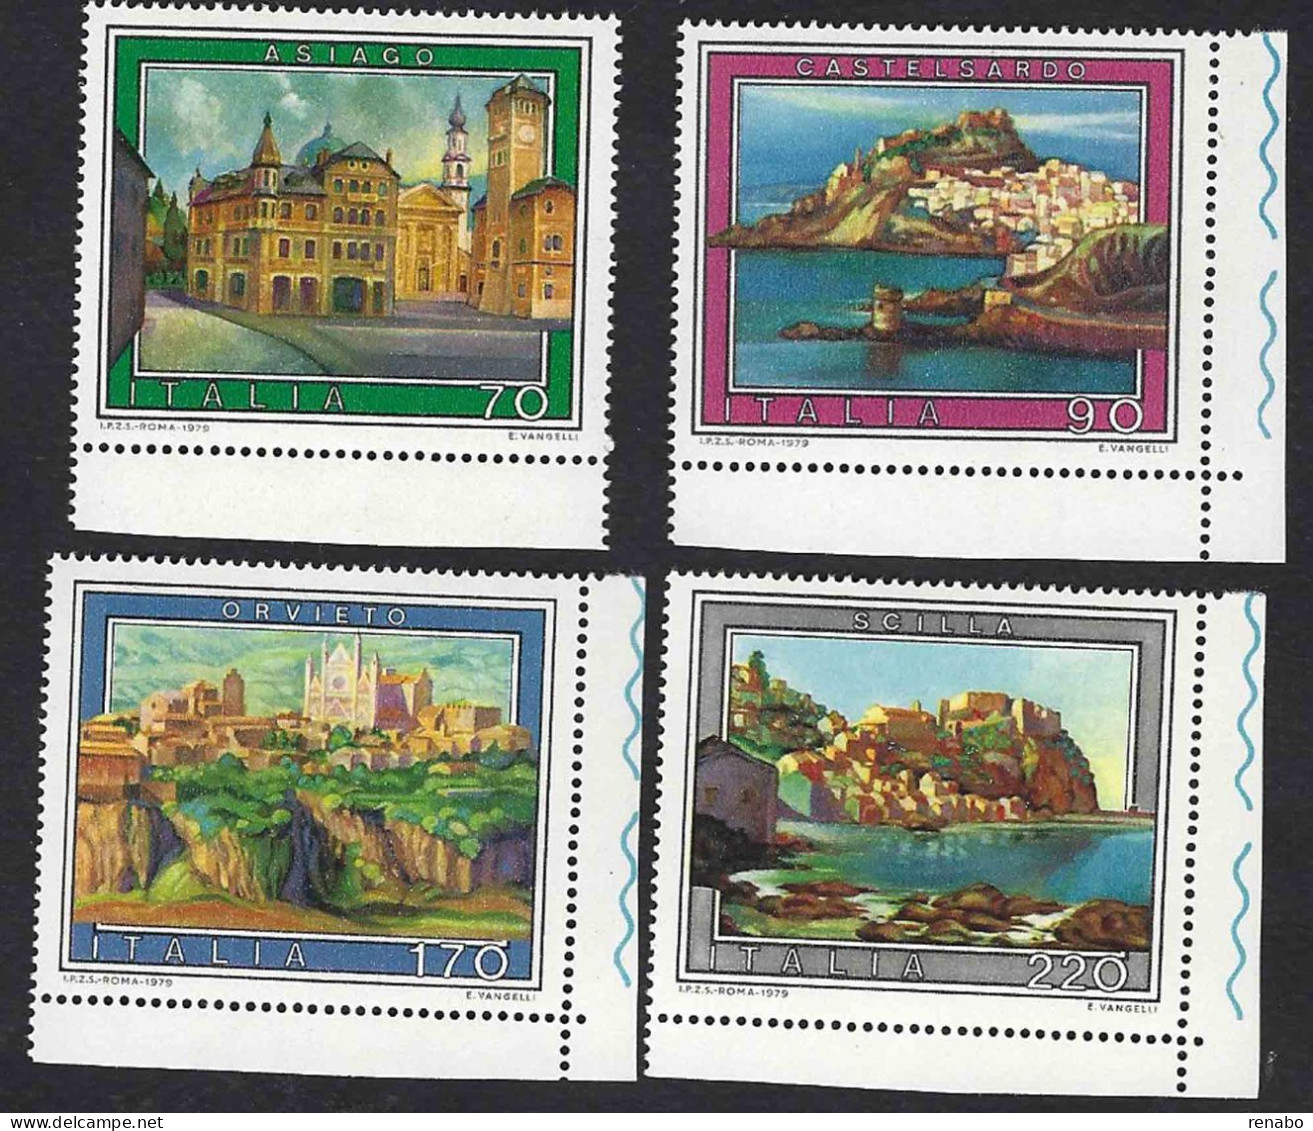 Italia 1979; Turistica: Asiago, Castelsardo, Orvieto, Scilla, Serie Completa In Francobolli Di Angolo.Bordo Accorciato. - 1971-80: Mint/hinged